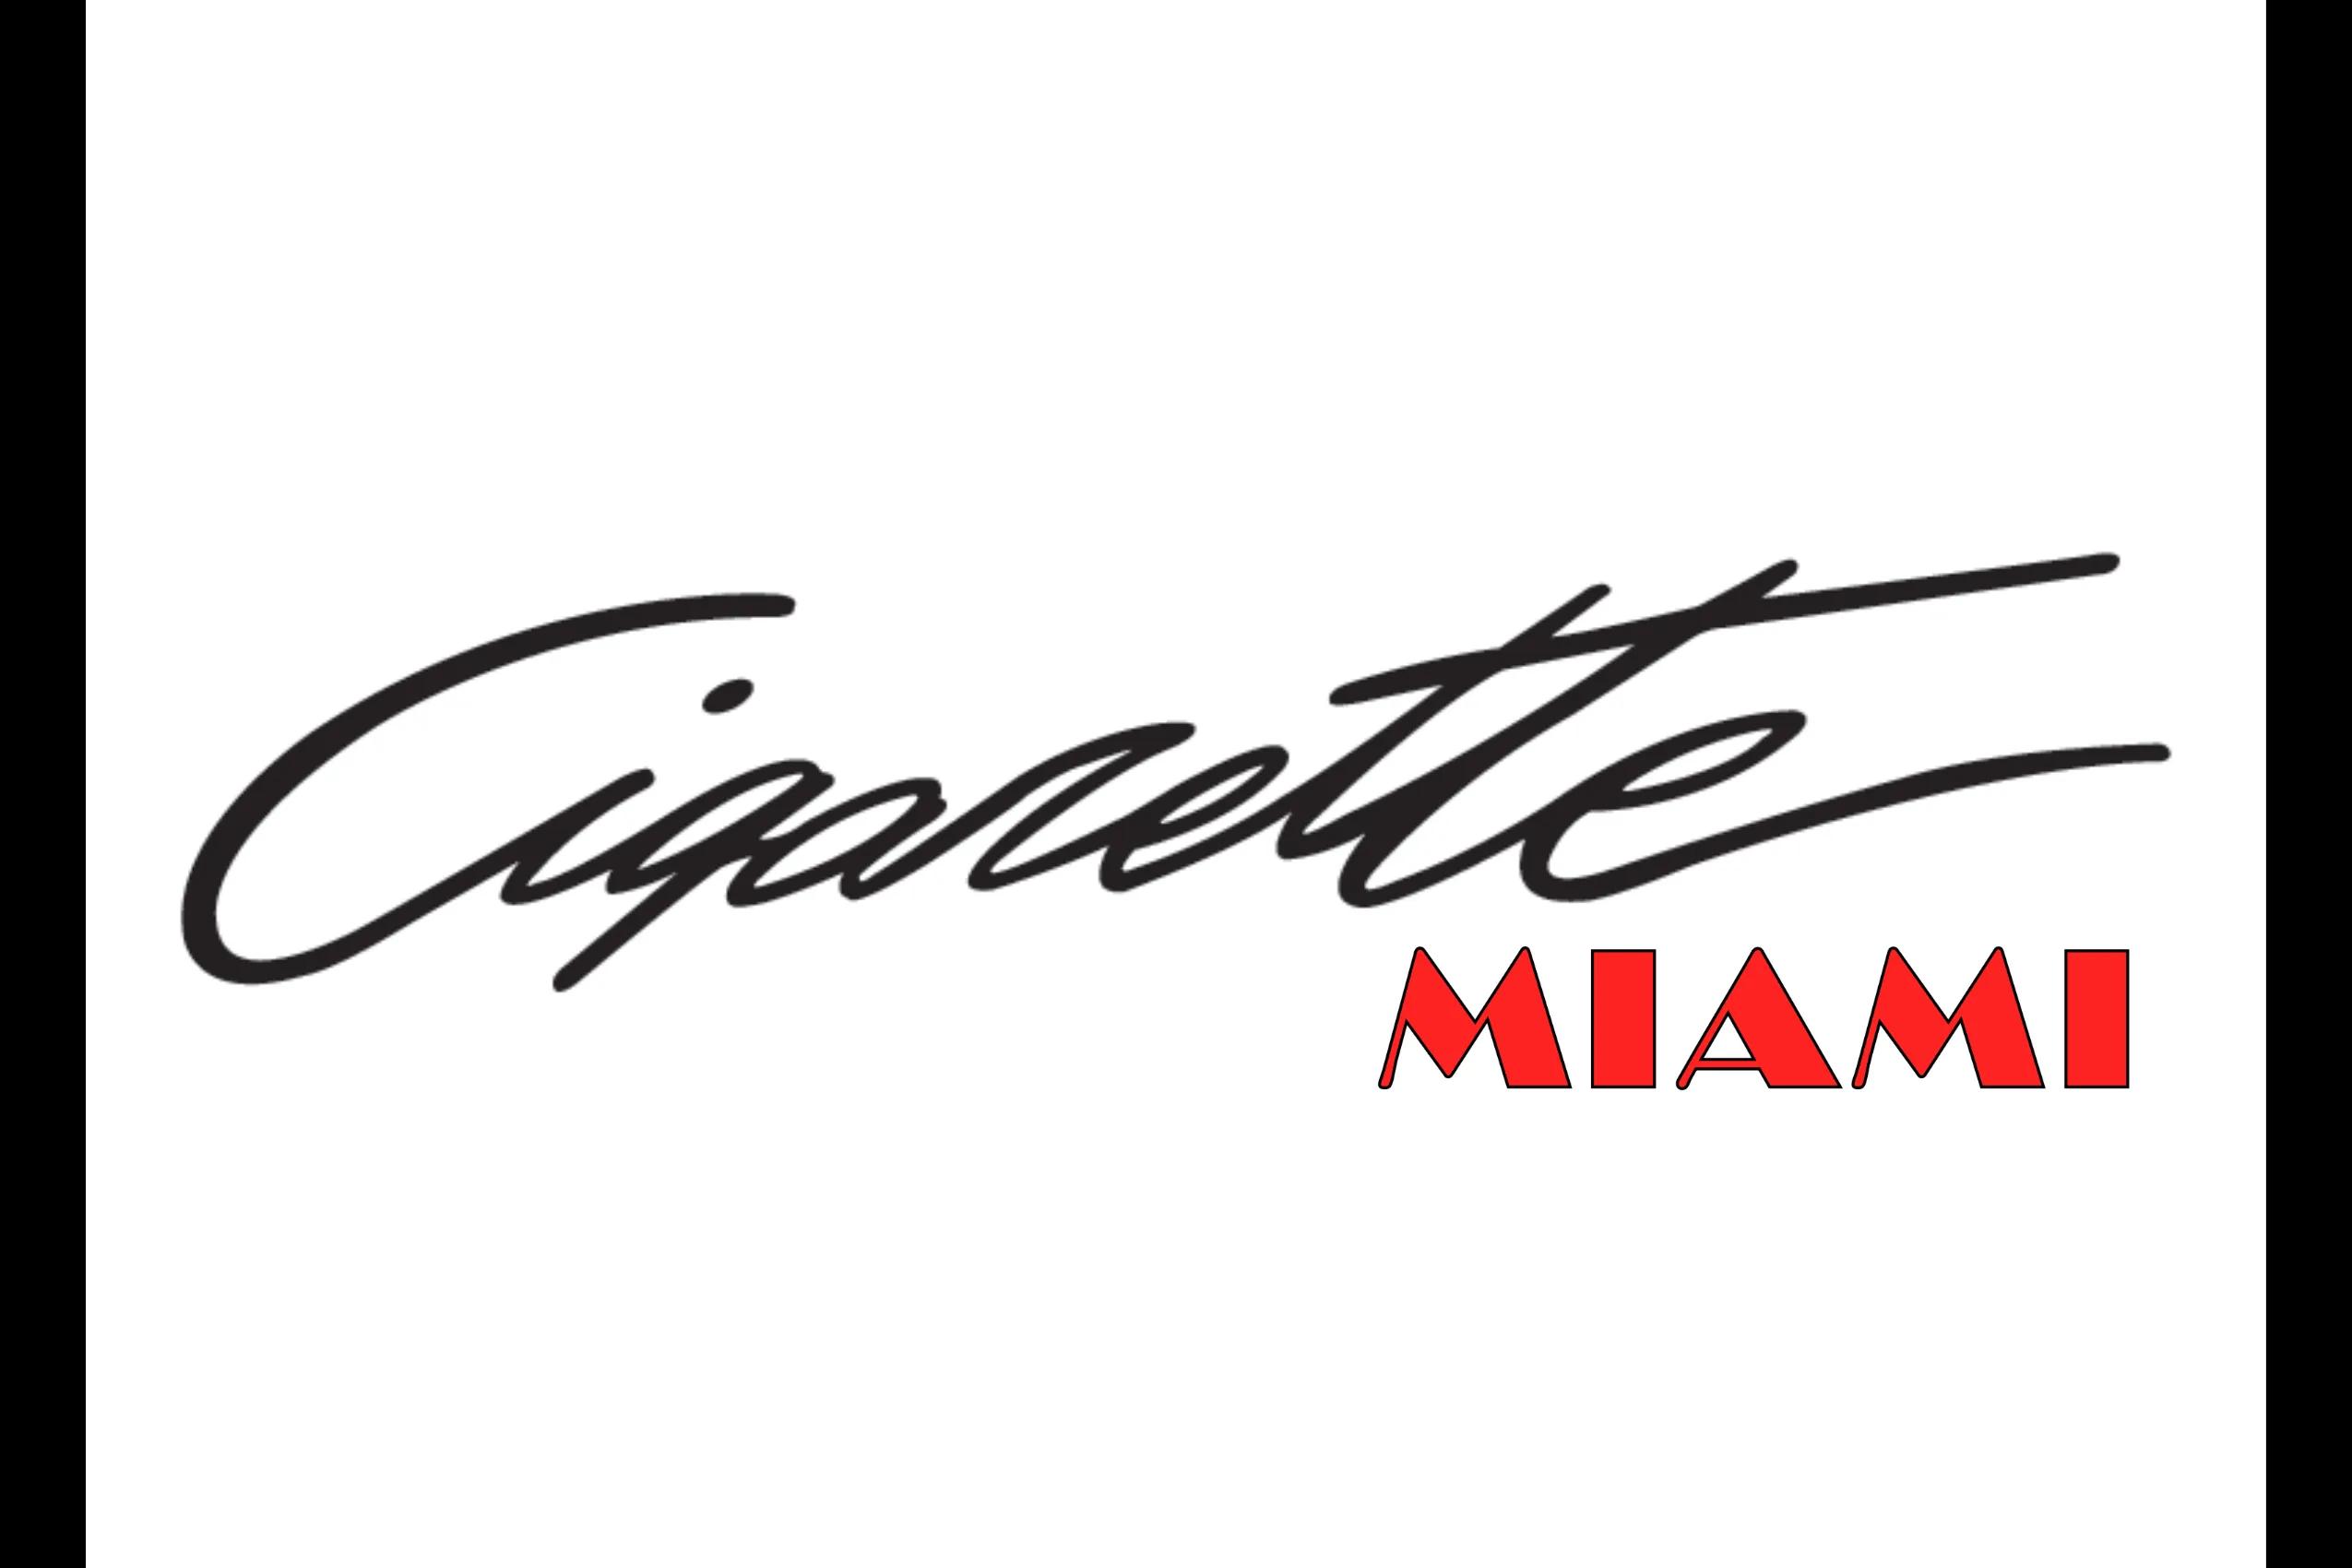 Cigarette Miami logo